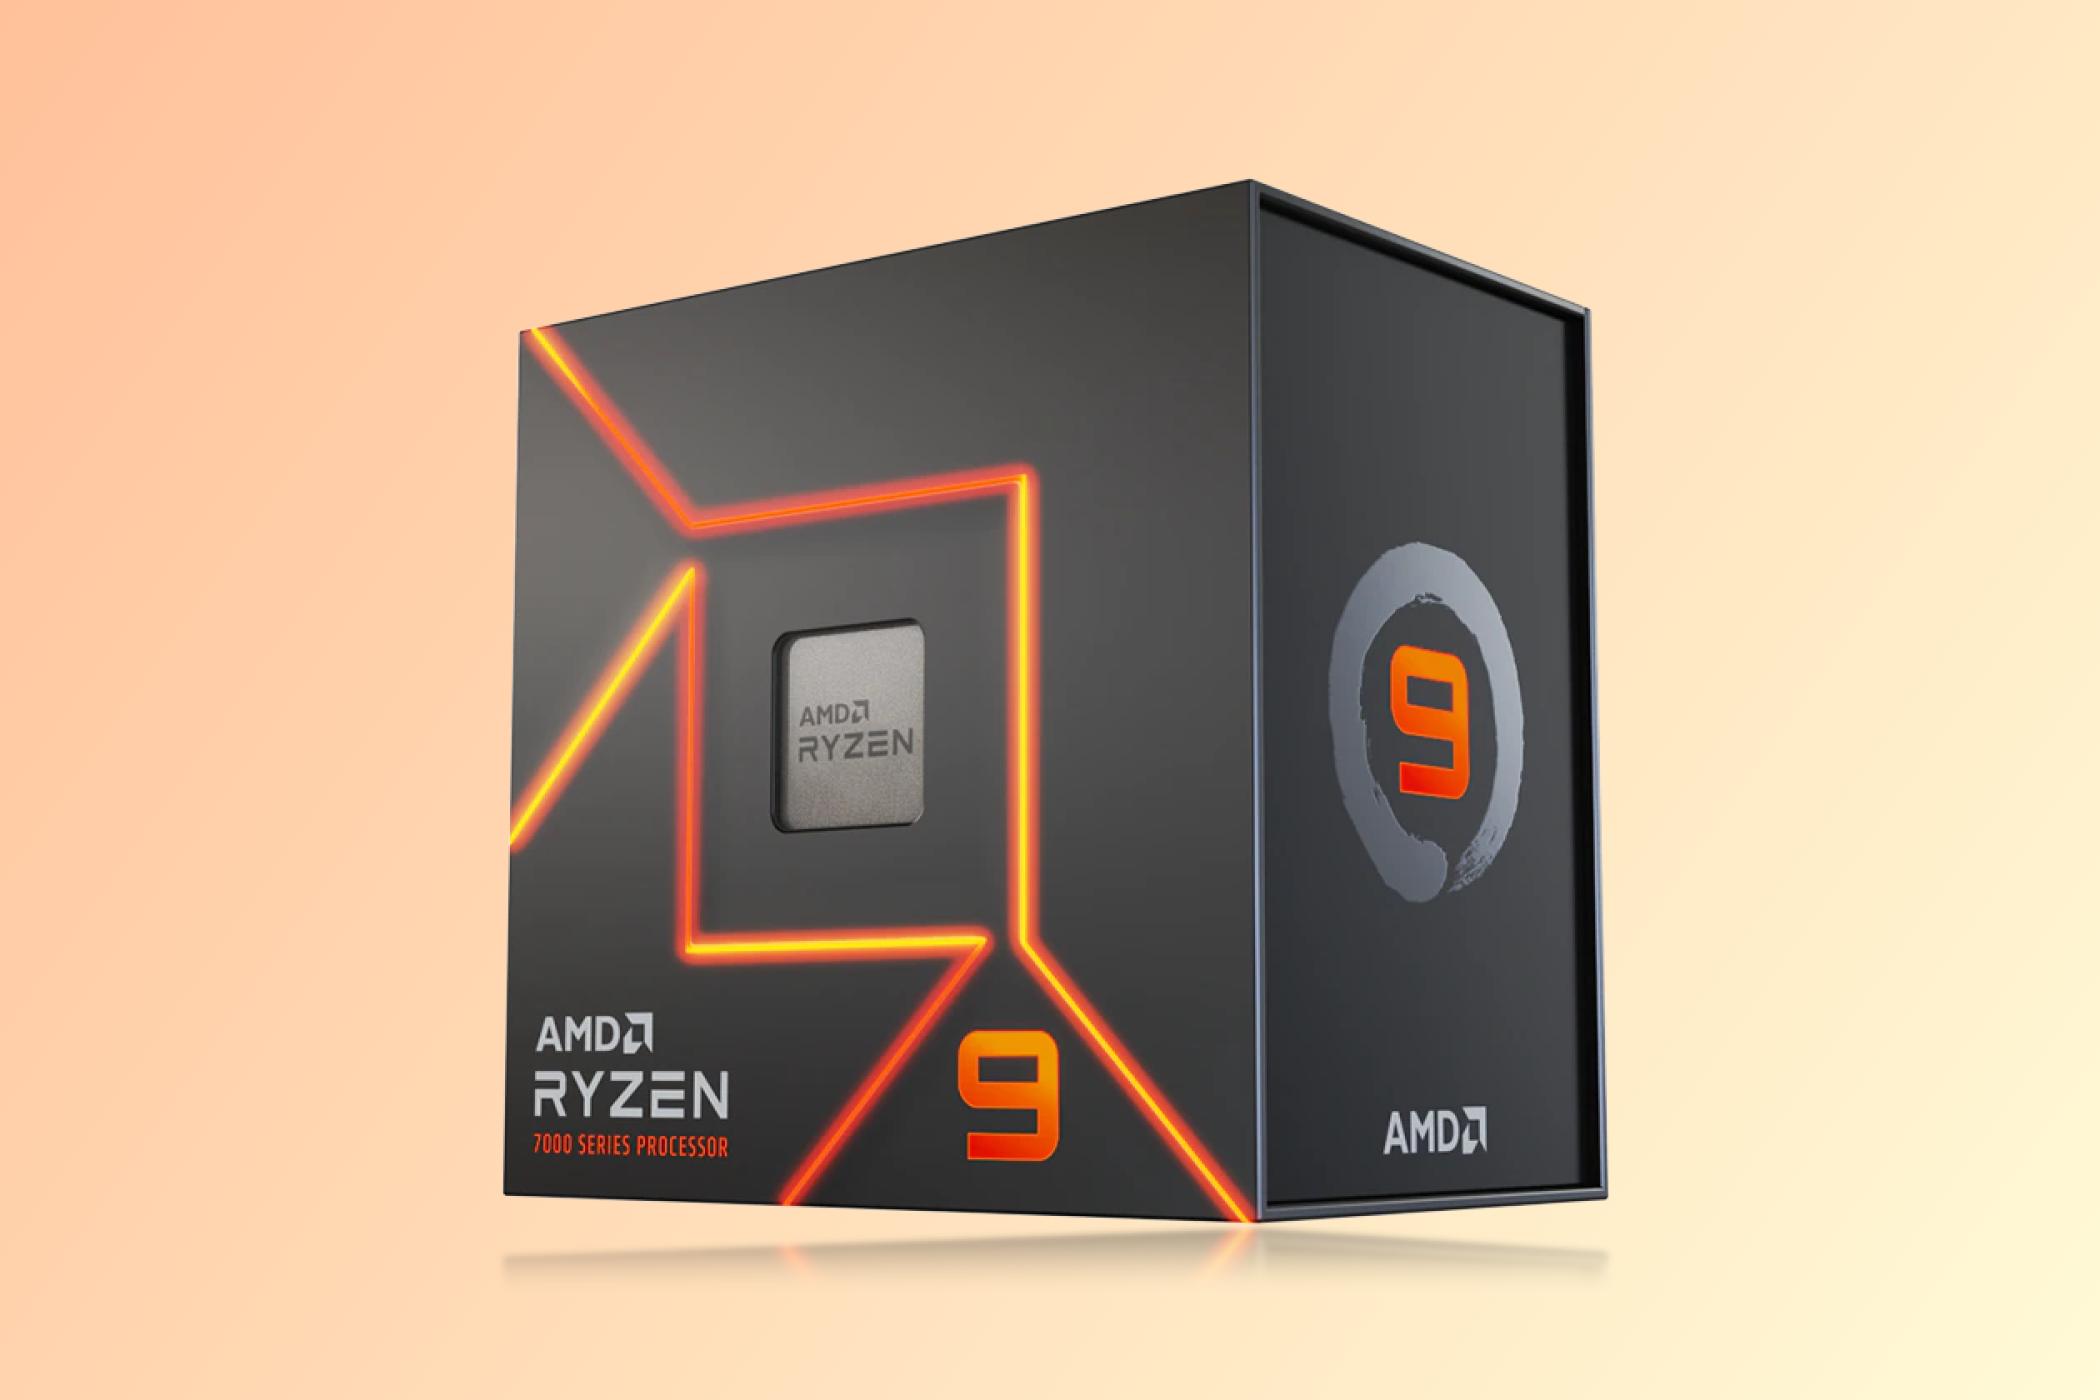 AMD Ryzen 9 7950X Box against an orange background